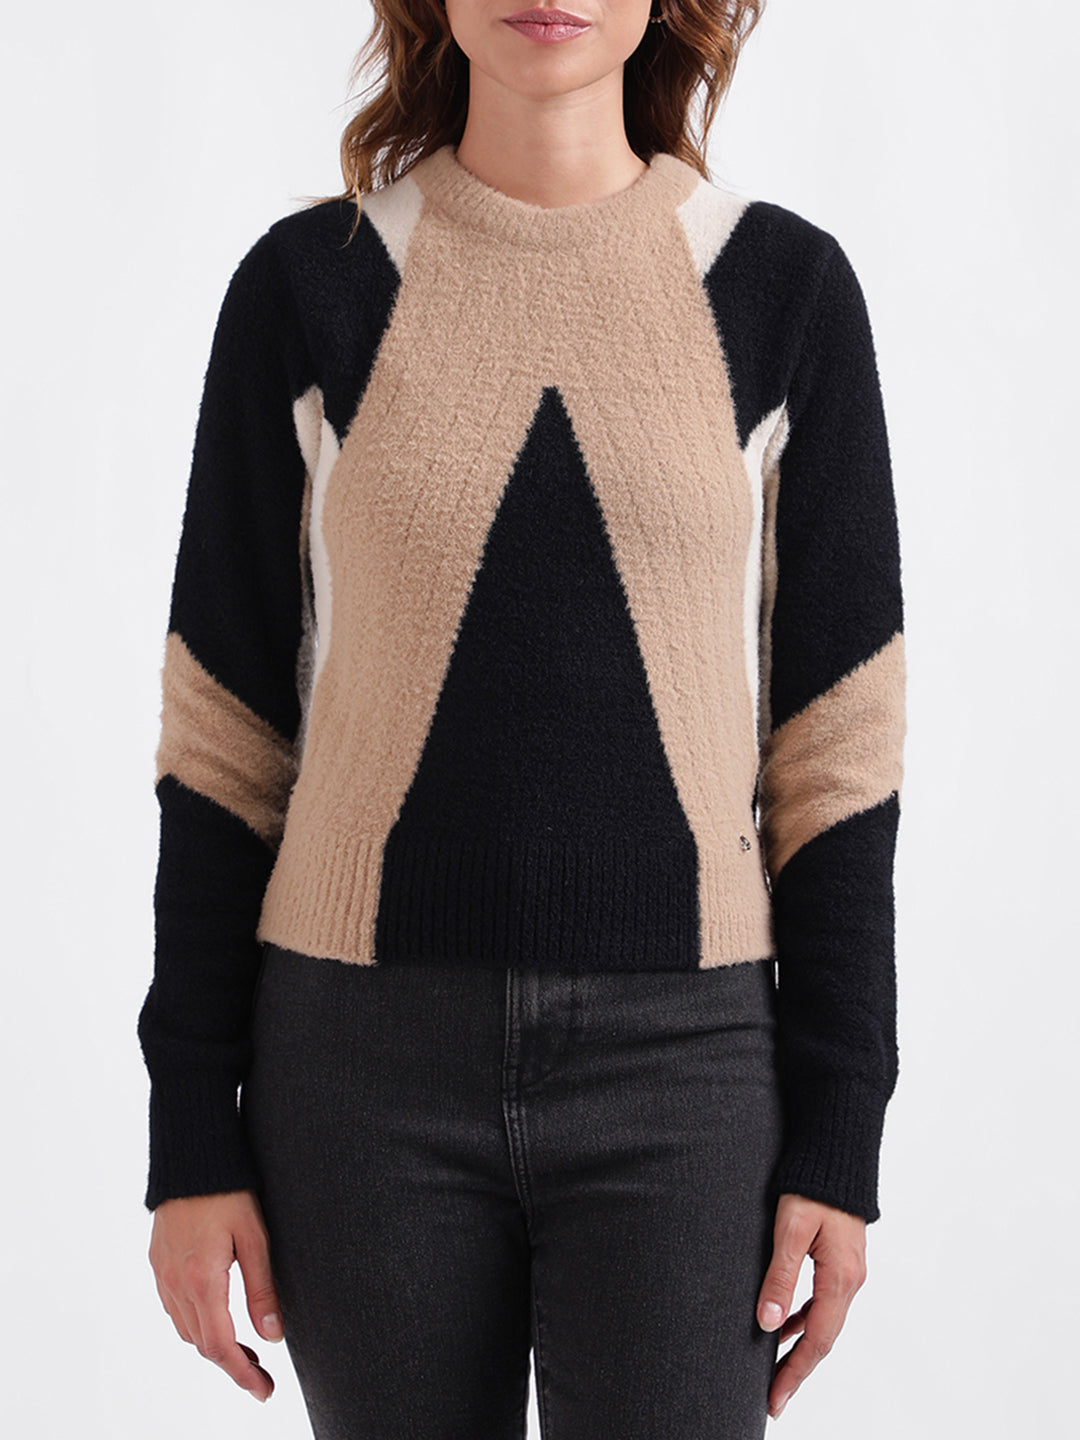 Buy Premium Sweater For Women Online